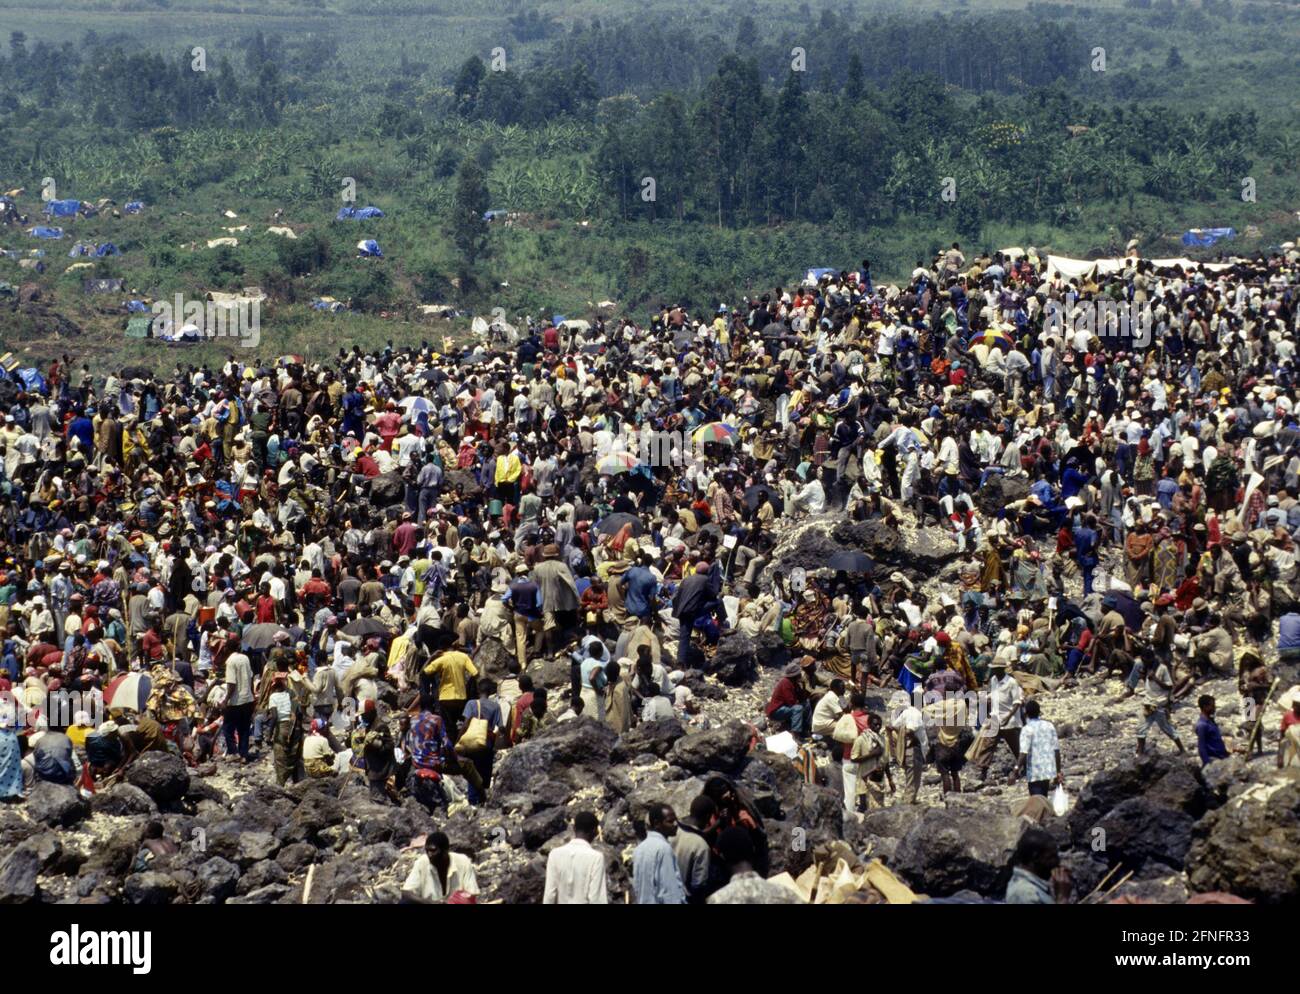 ZAIRE : rifugiati ruandesi in un campo vicino a Goma , luglio 1994 [traduzione automatizzata] Foto Stock